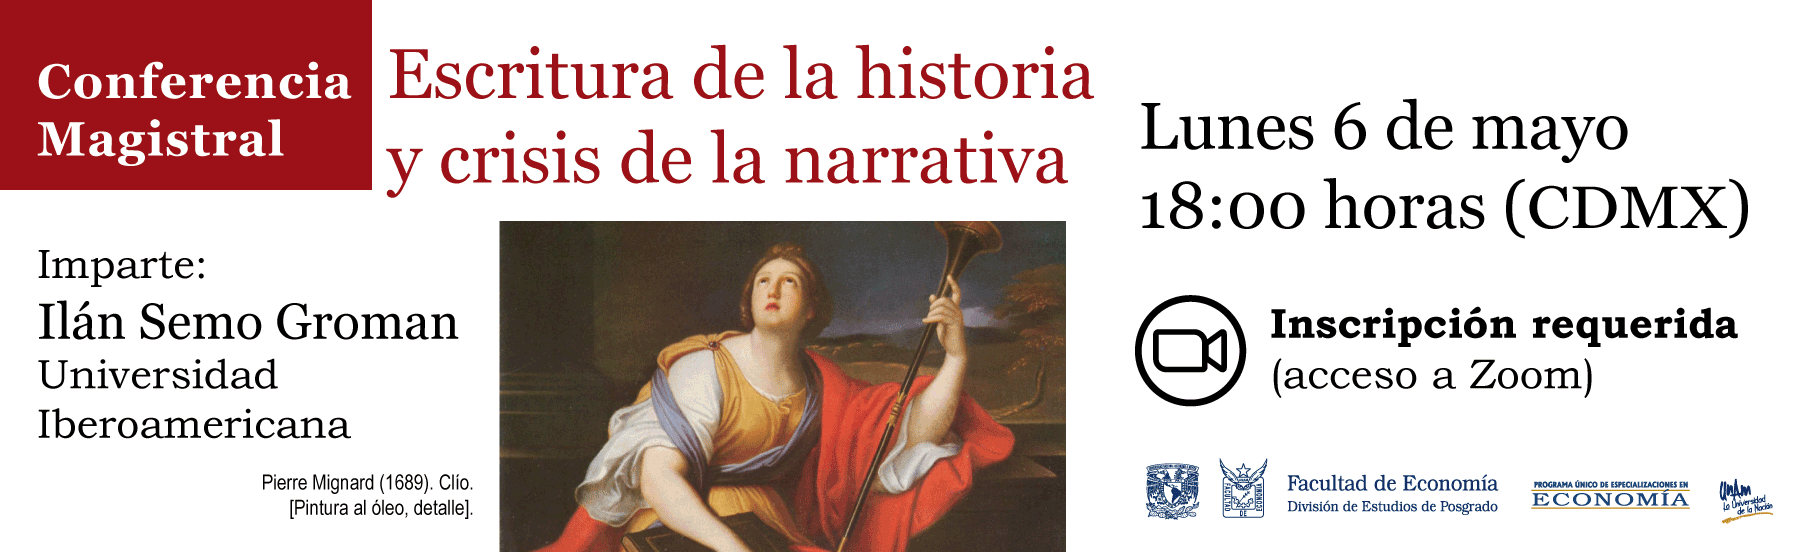 Conferencia Magistral: Escritura de la historia y crisis de la narrativa, por Ilán Semo, Lunes 6 de mayo
